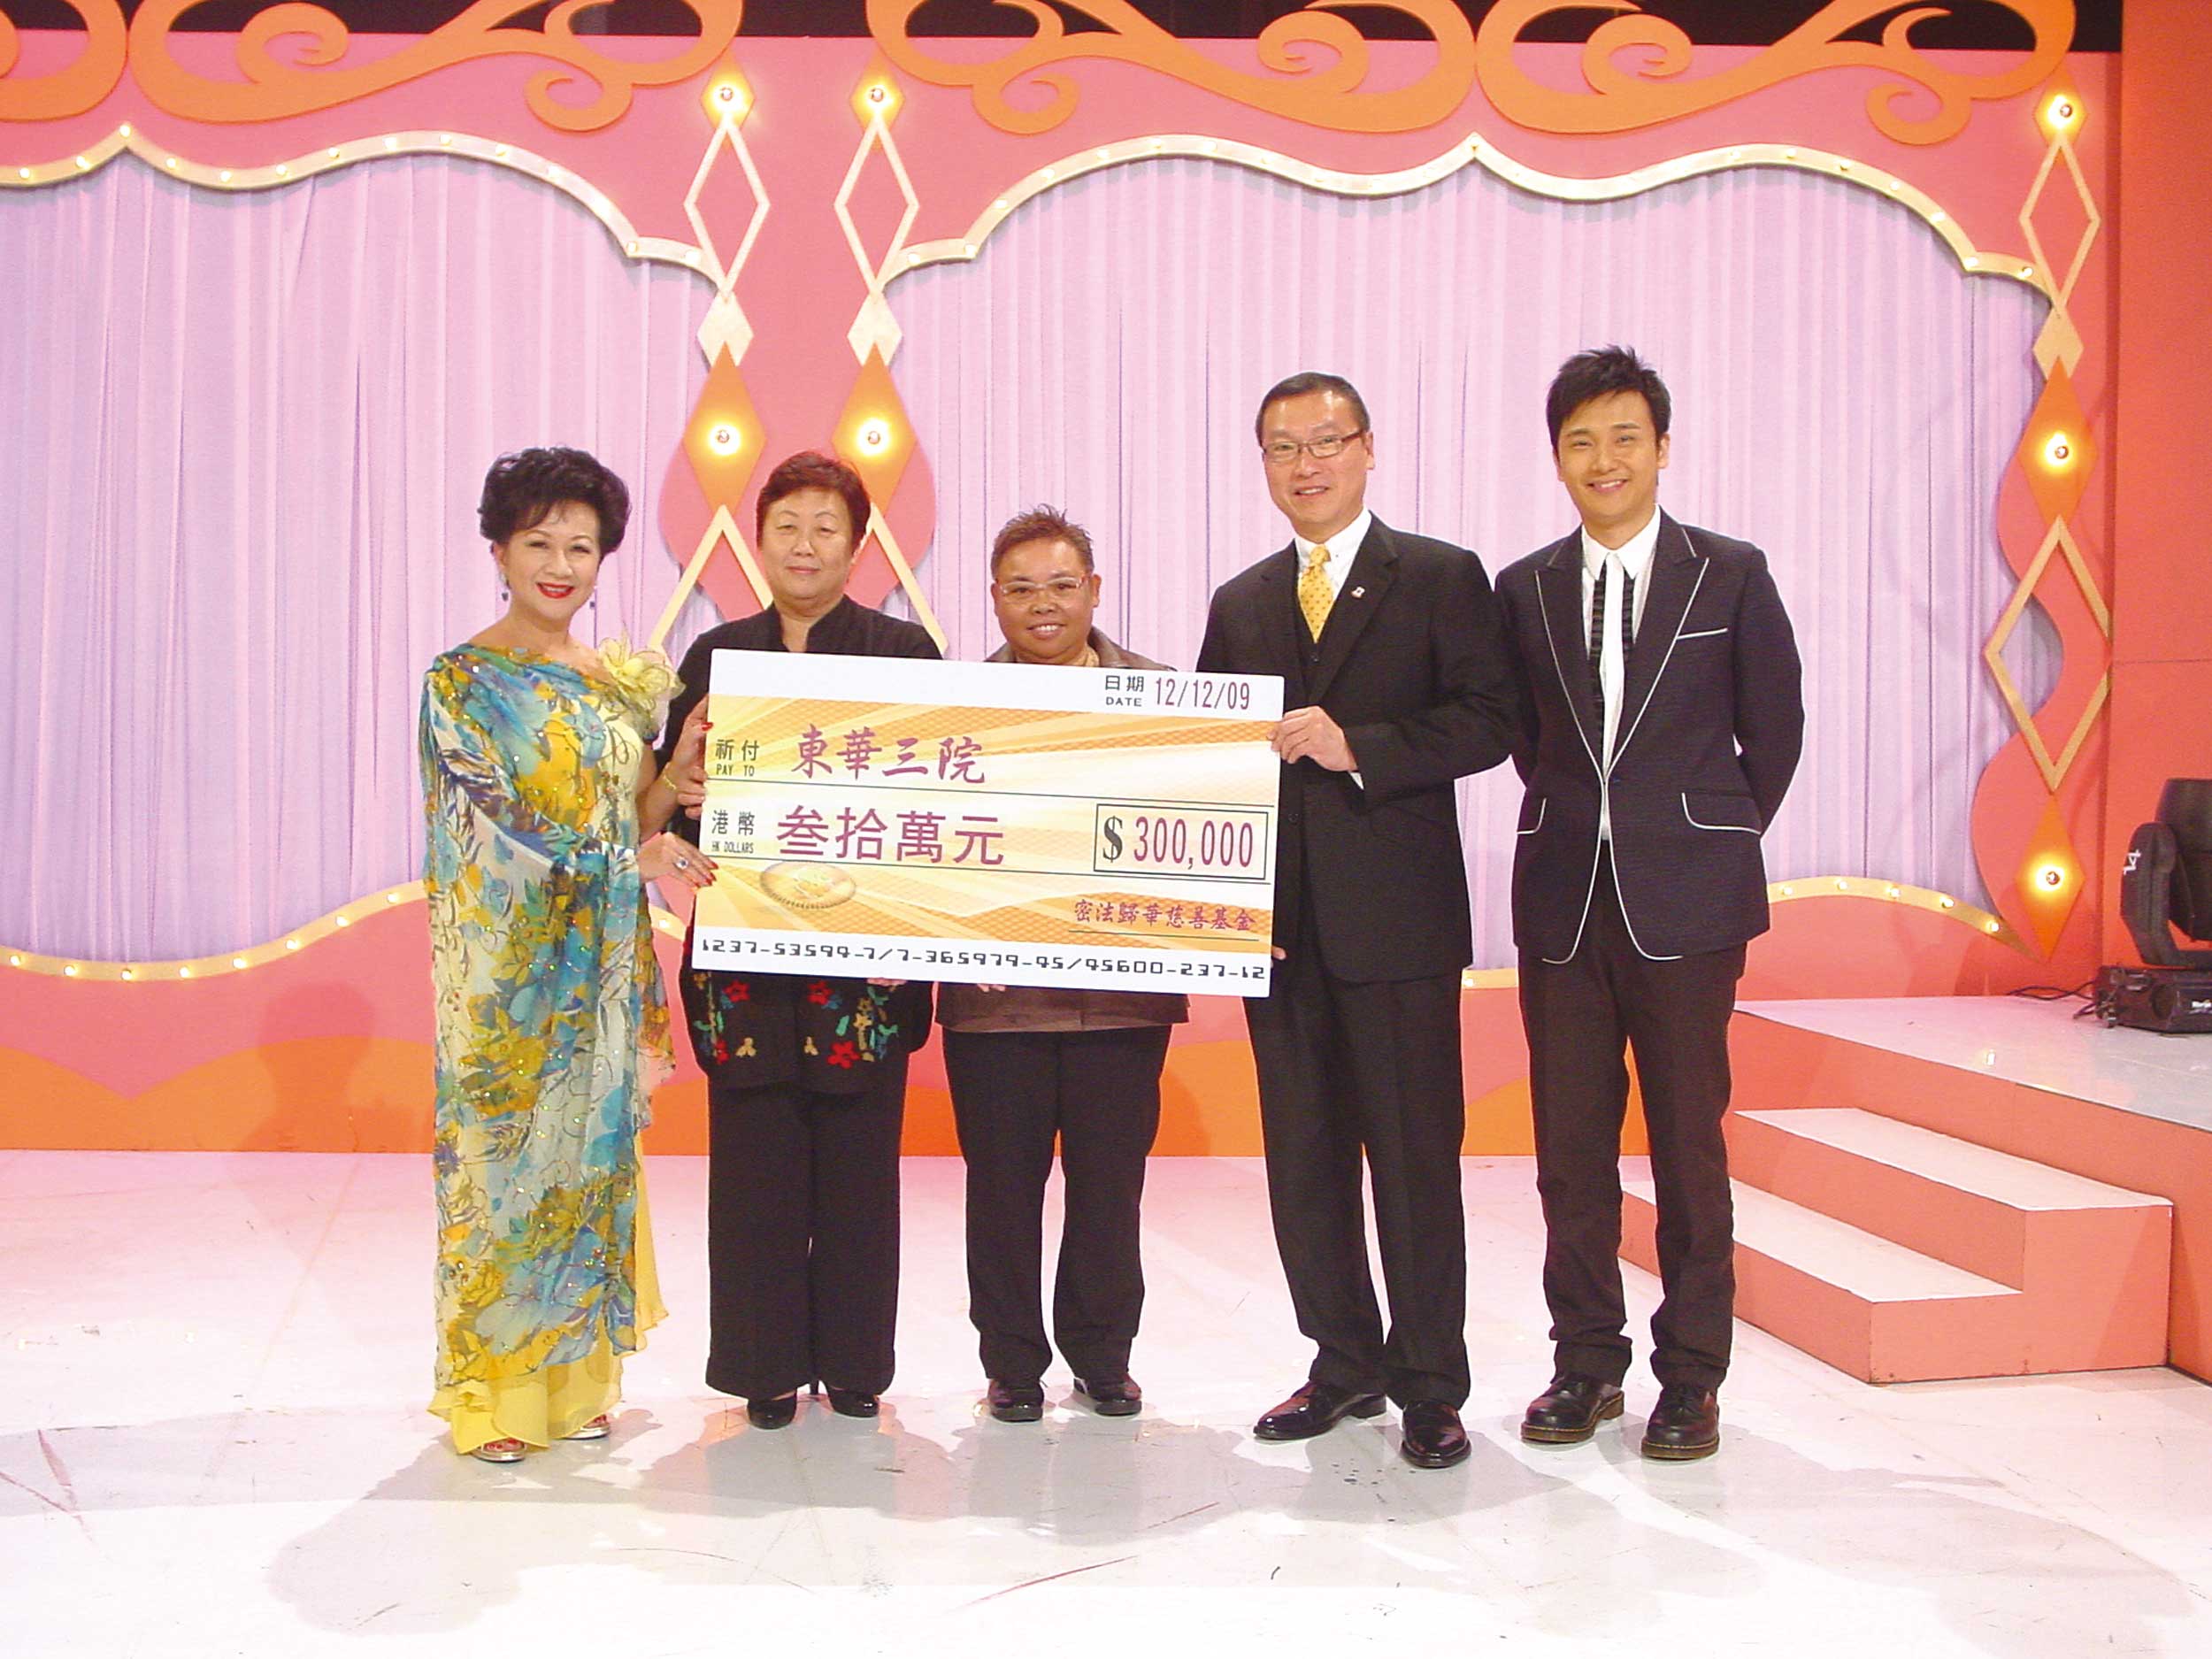 由薛家燕小姐參加義演，「弘法山大師堂」院長宥恕師和弘濟師出席東華三院支票捐贈儀式。